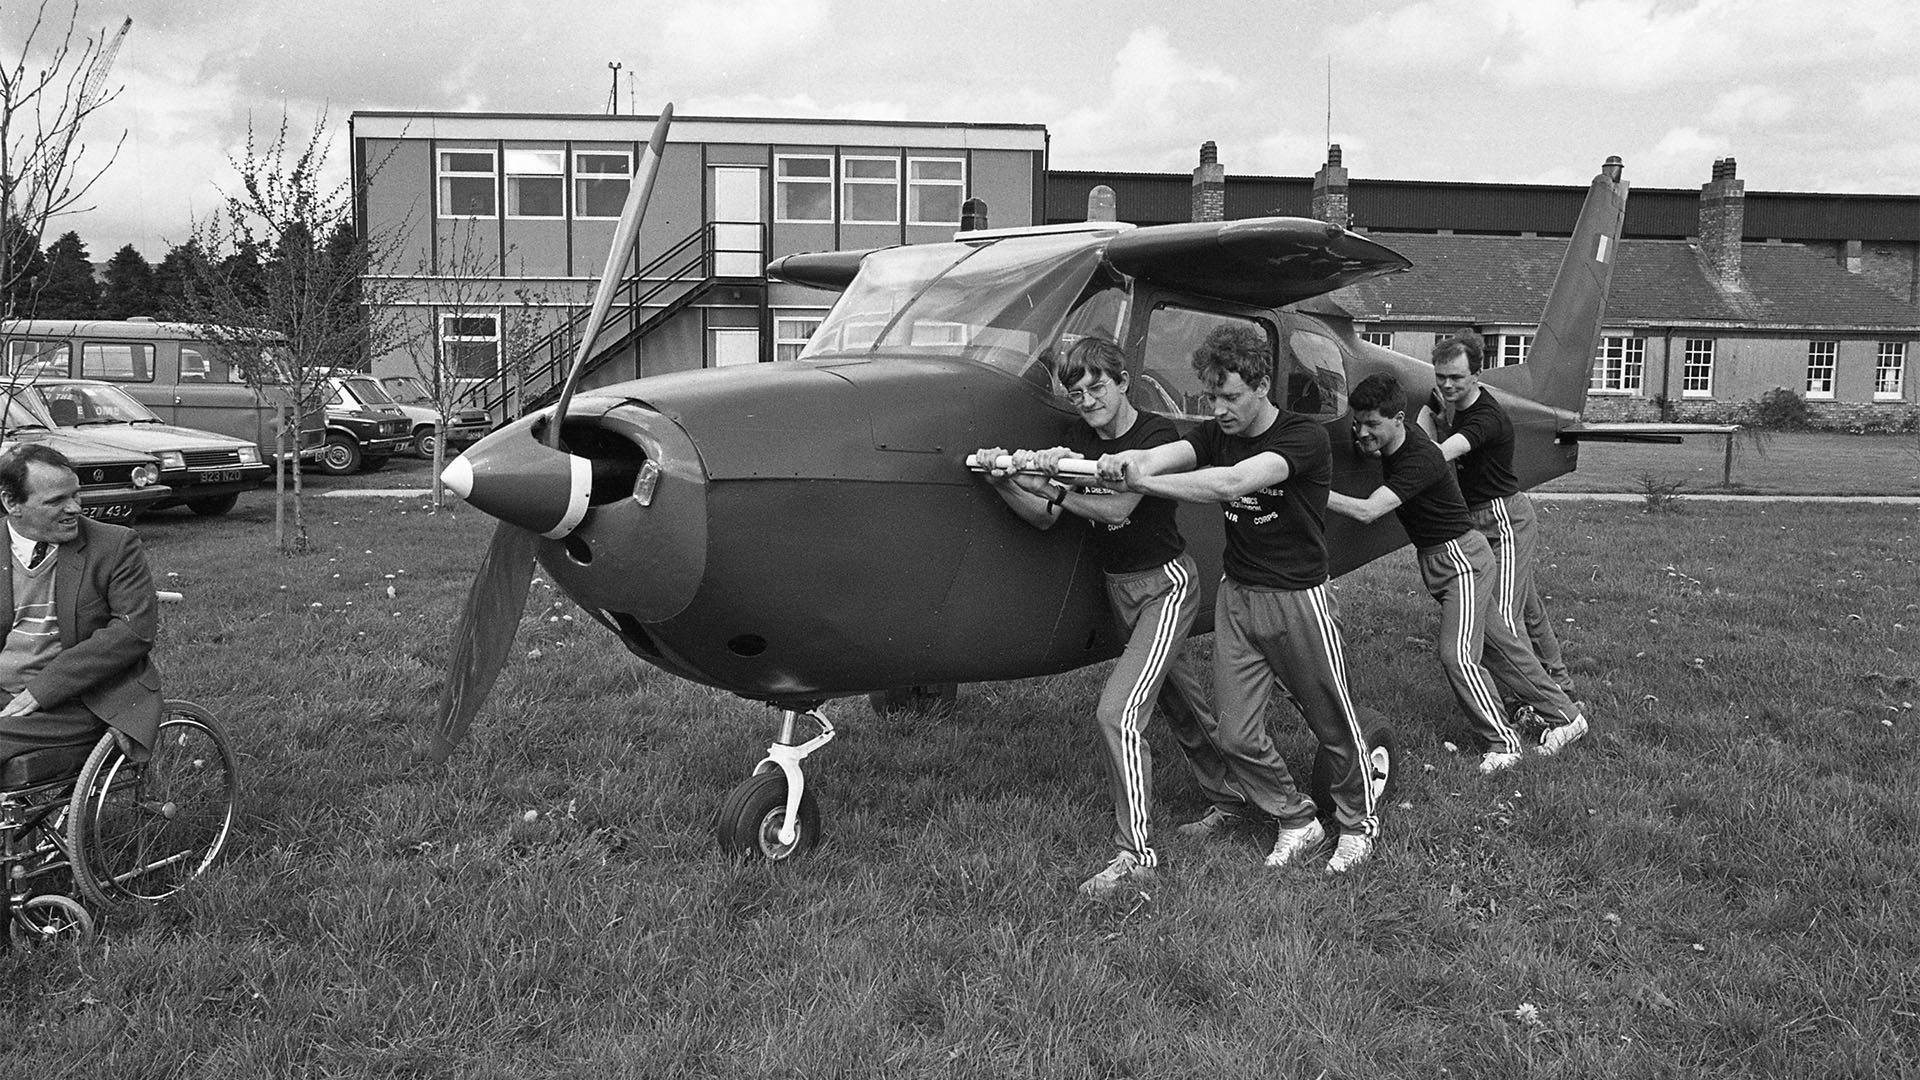 Vier Mitglieder der irischen Luftwaffe schieben die flügellose Cessna 172, die seit mehr als 60 Jahren hergestellt wird und im Laufe ihrer Geschichte weit verbreitet war.  (Teil der Ireland / NLI Collection of Independent Newspapers).